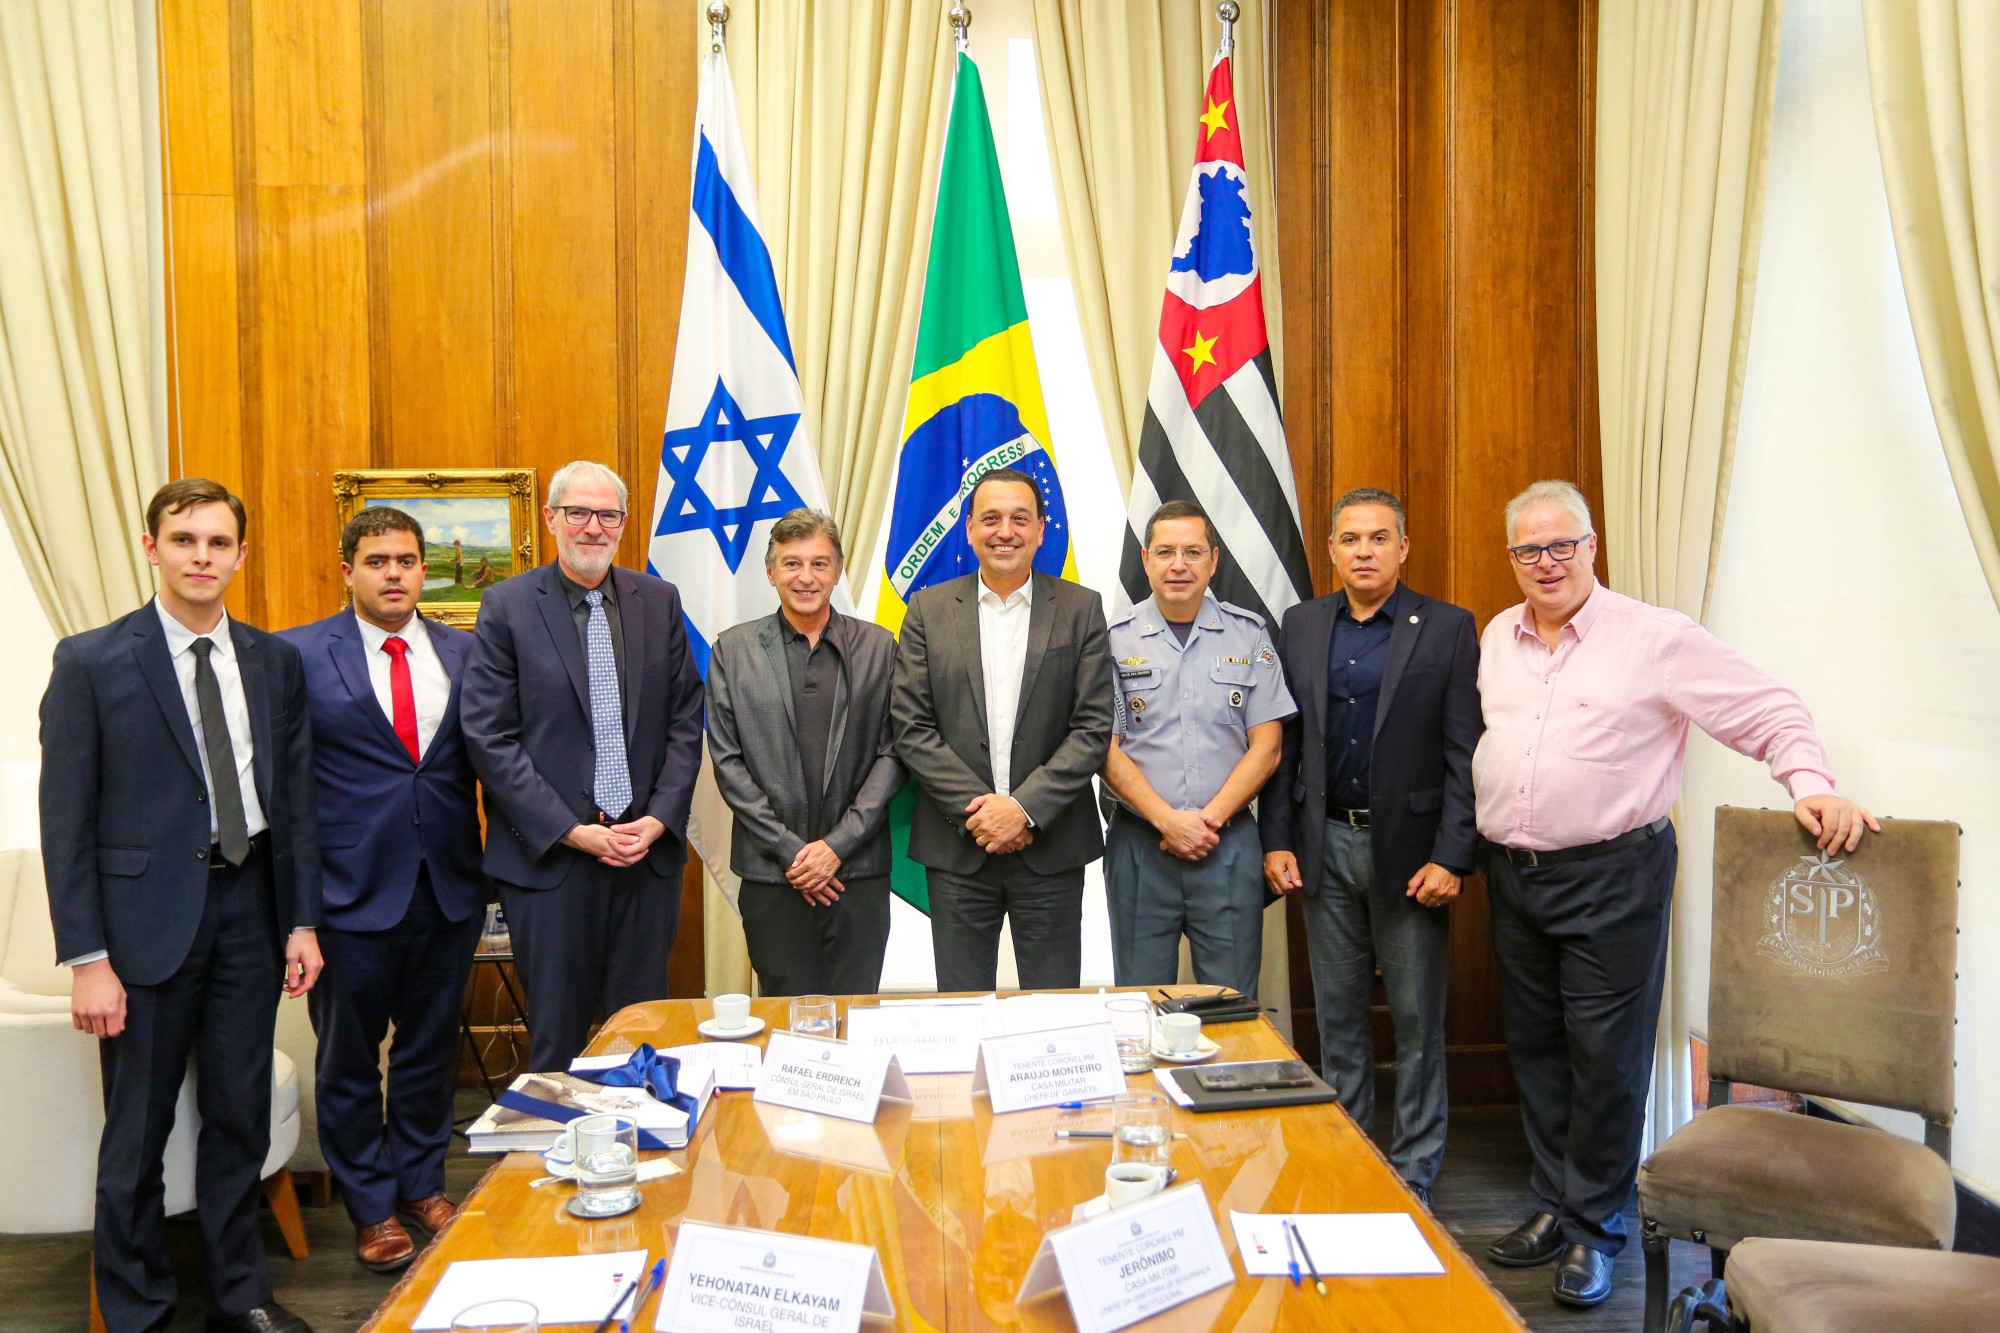 Presidentes da CONIB e da FISESP e Cônsul de Israel visitam o vice-governador de São Paulo - Fundada em 1948, a CONIB – Confederação Israelita do Brasil é o órgão de representação e coordenação política da comunidade judaica brasileira. 